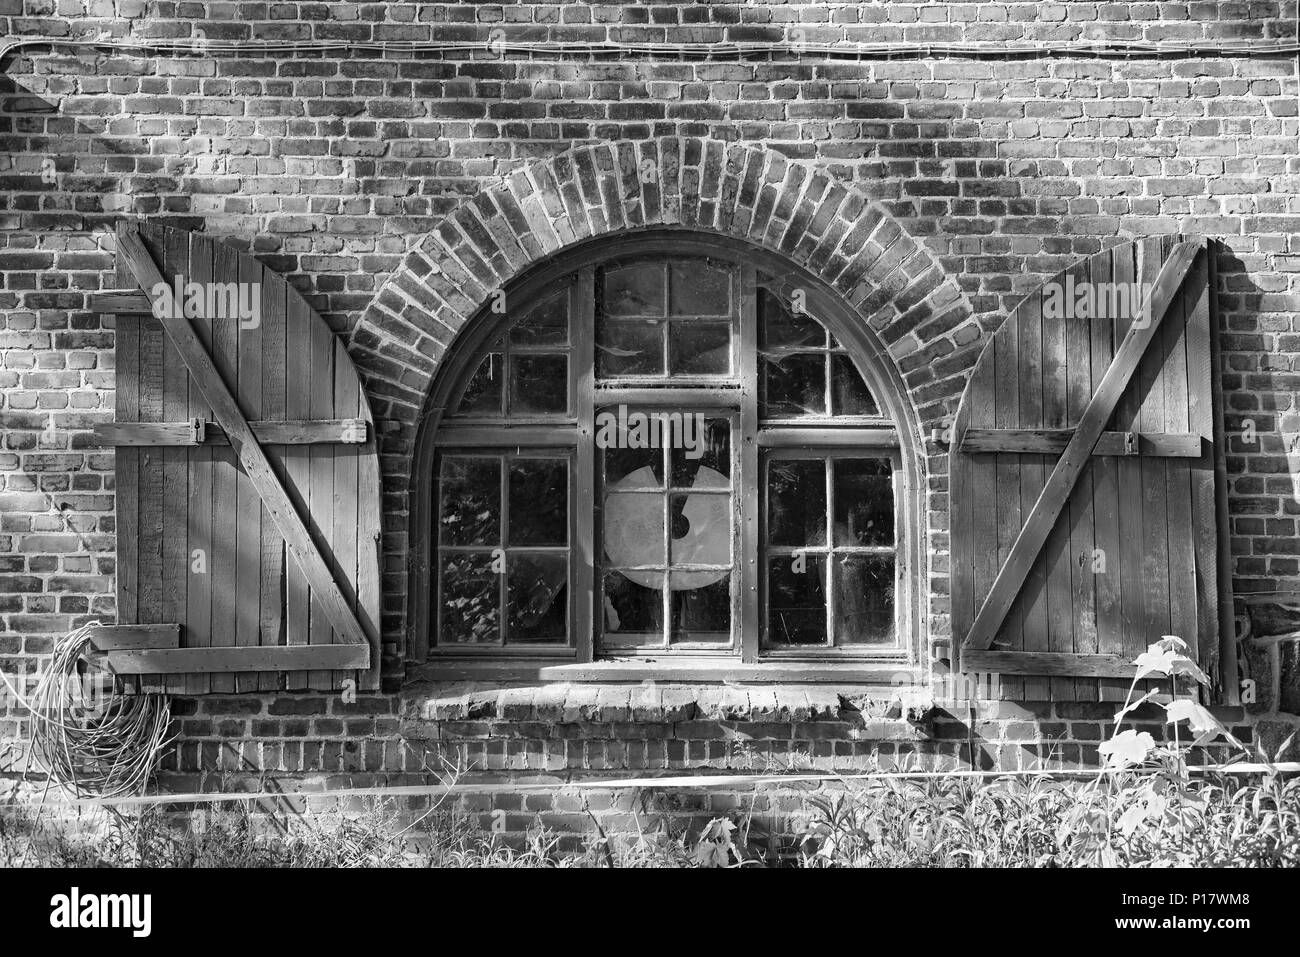 Fenster in einem Backstein Bauernhaus mit Fensterläden in Schwarz und Weiß, Schleswig Holstein, Deutschland Stockfoto